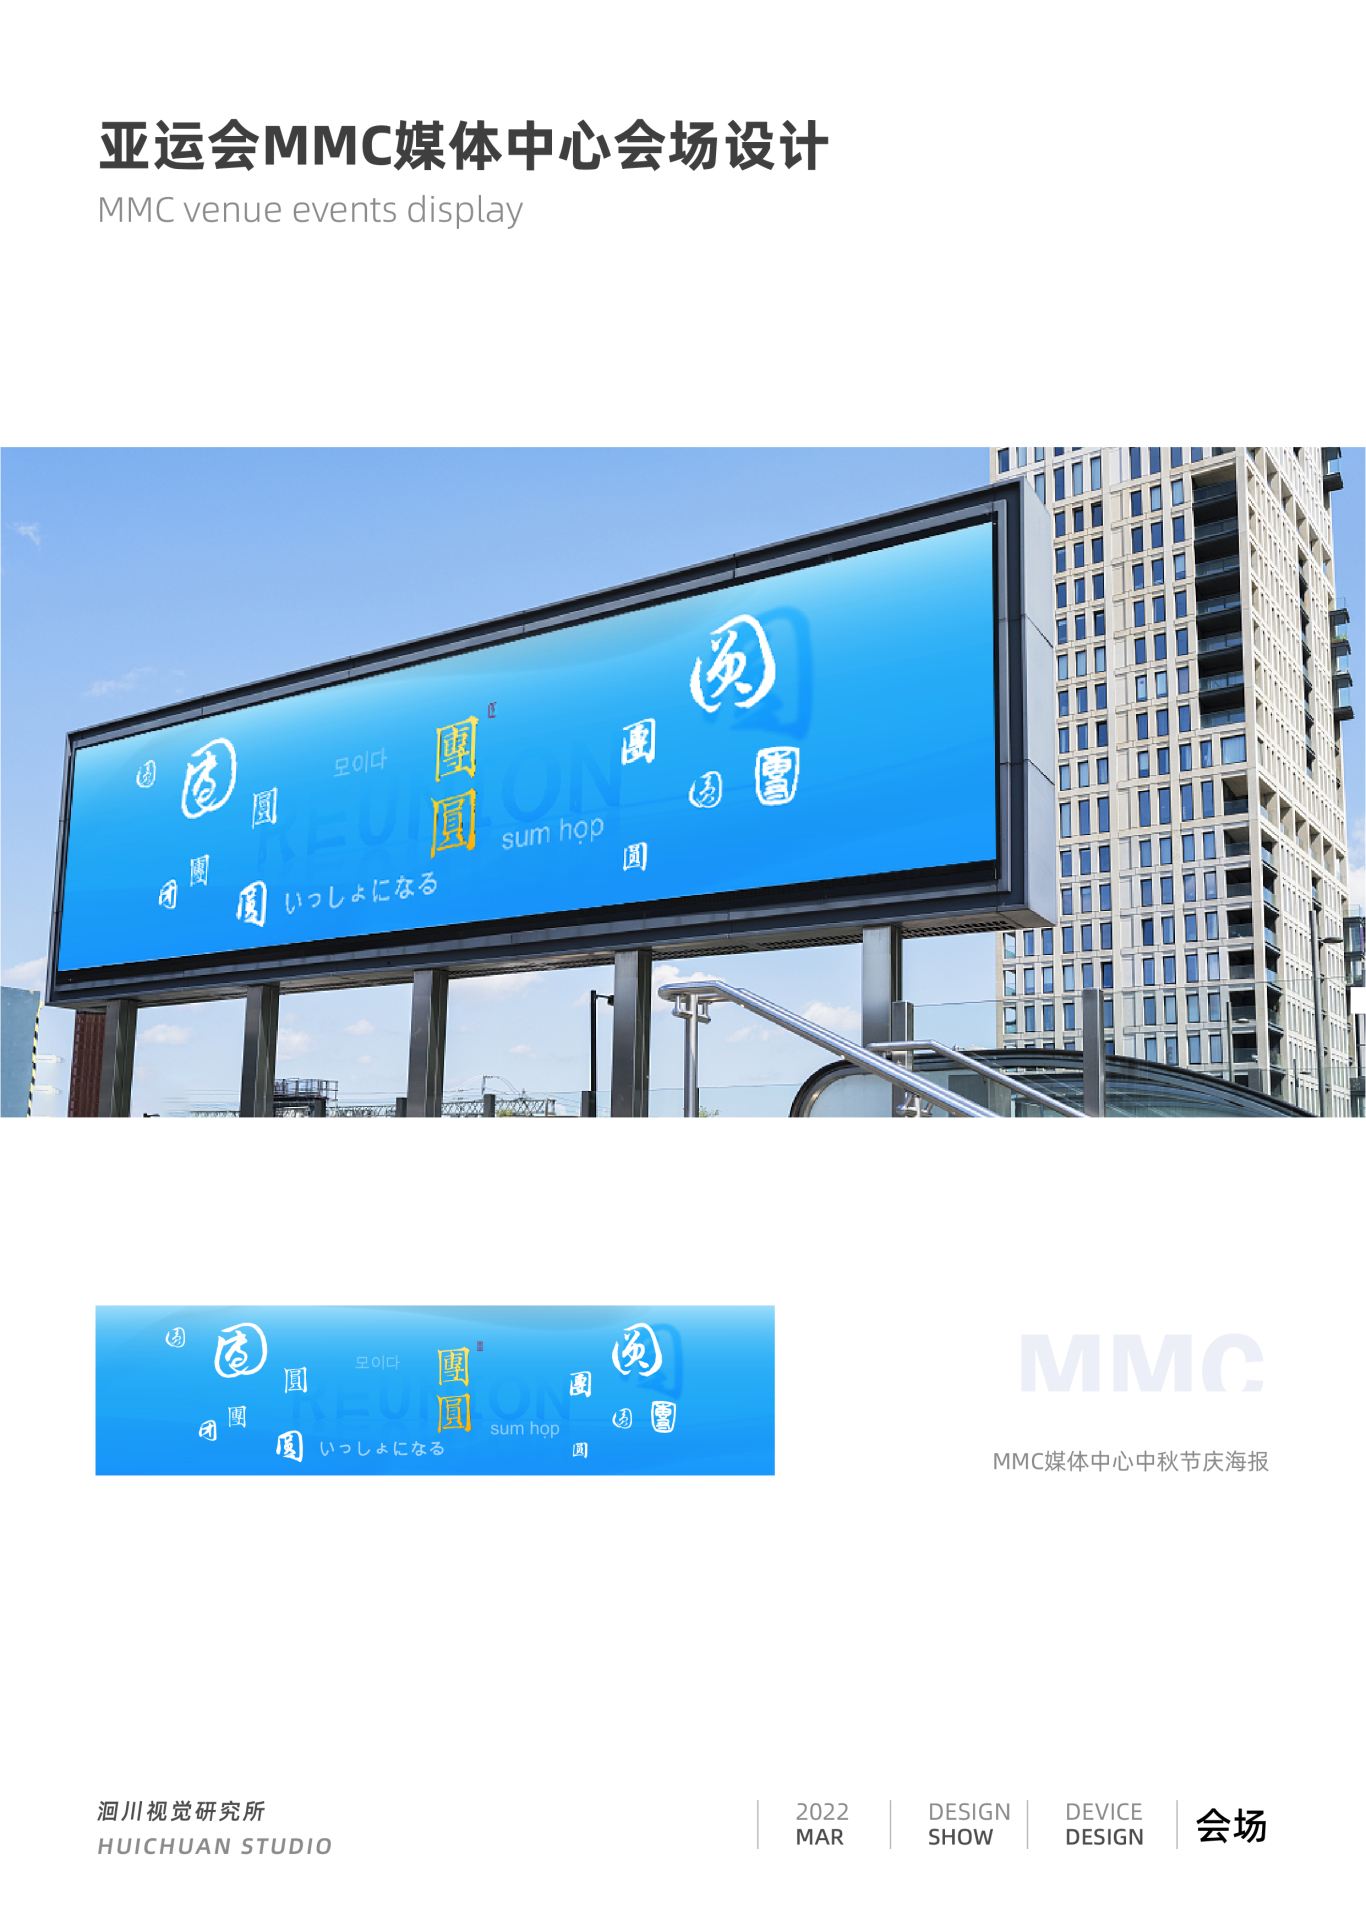 亚运会MMC主媒体中心场馆设计图1